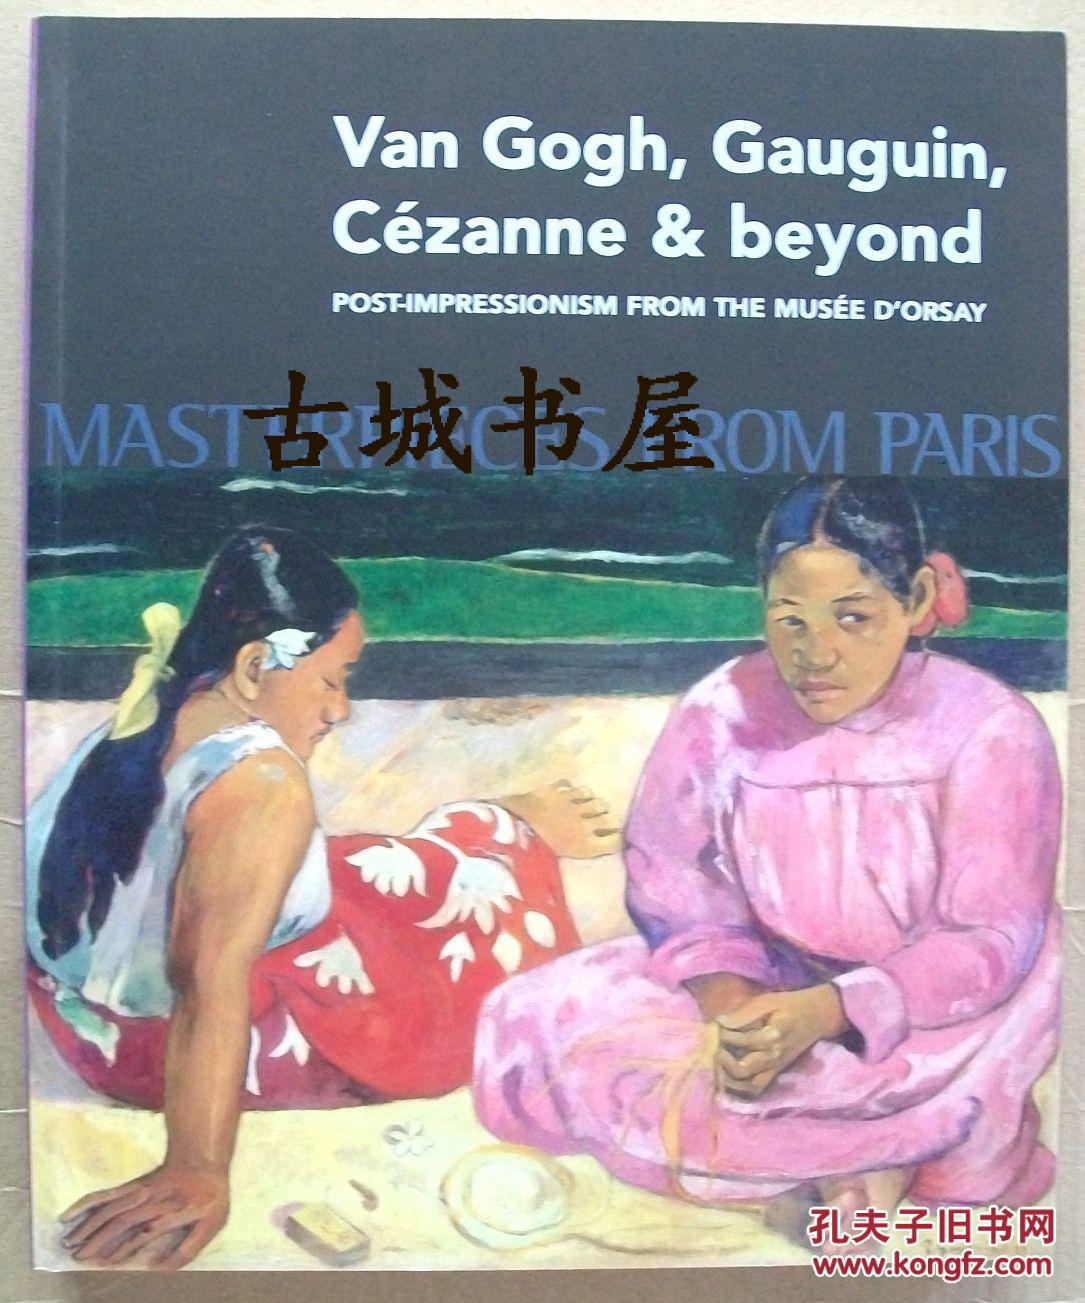 大师的作品《梵高，高更，塞尚及其他艺术家作品》100多幅彩色与黑白绘画，2009年出版